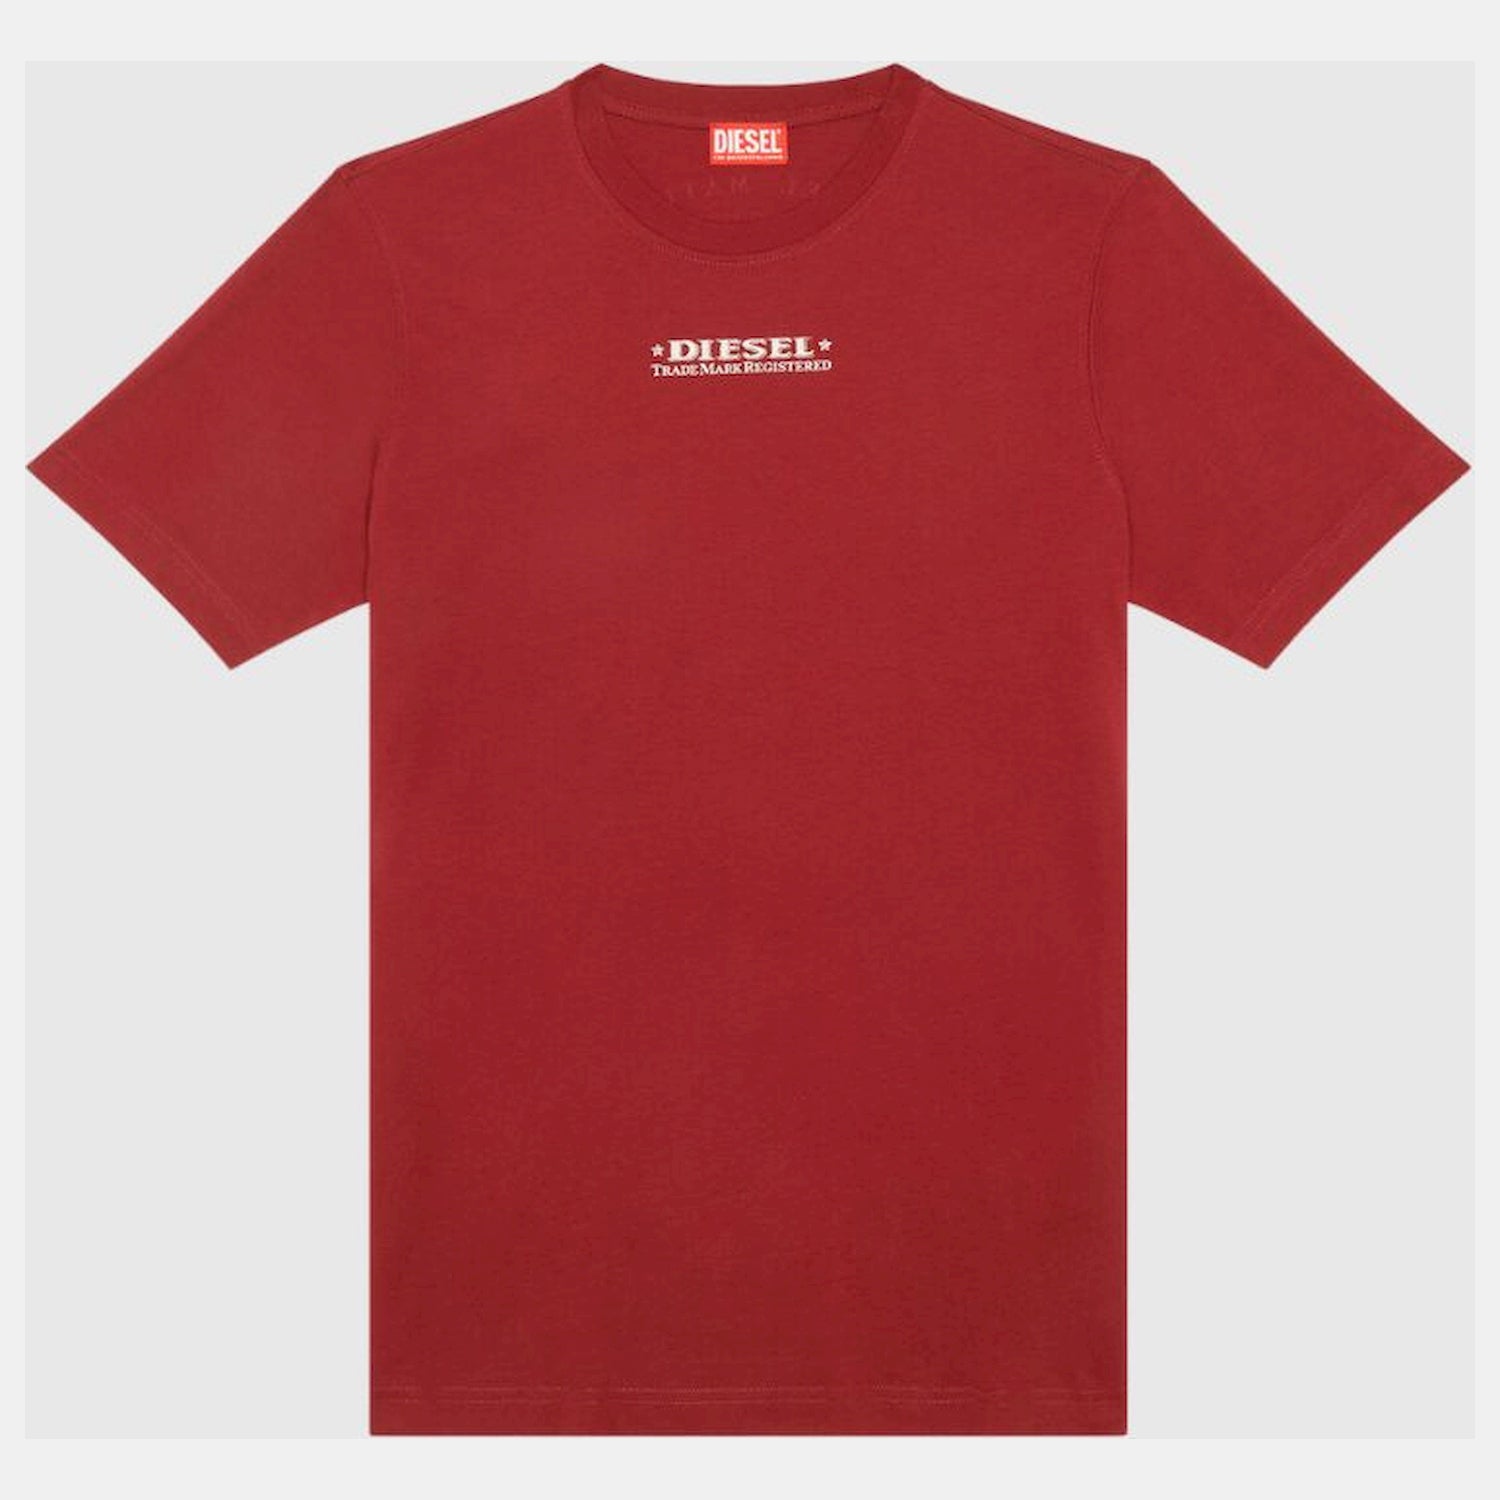 Diesel T Shirt A02333 0catm Red Vermelho_shot3